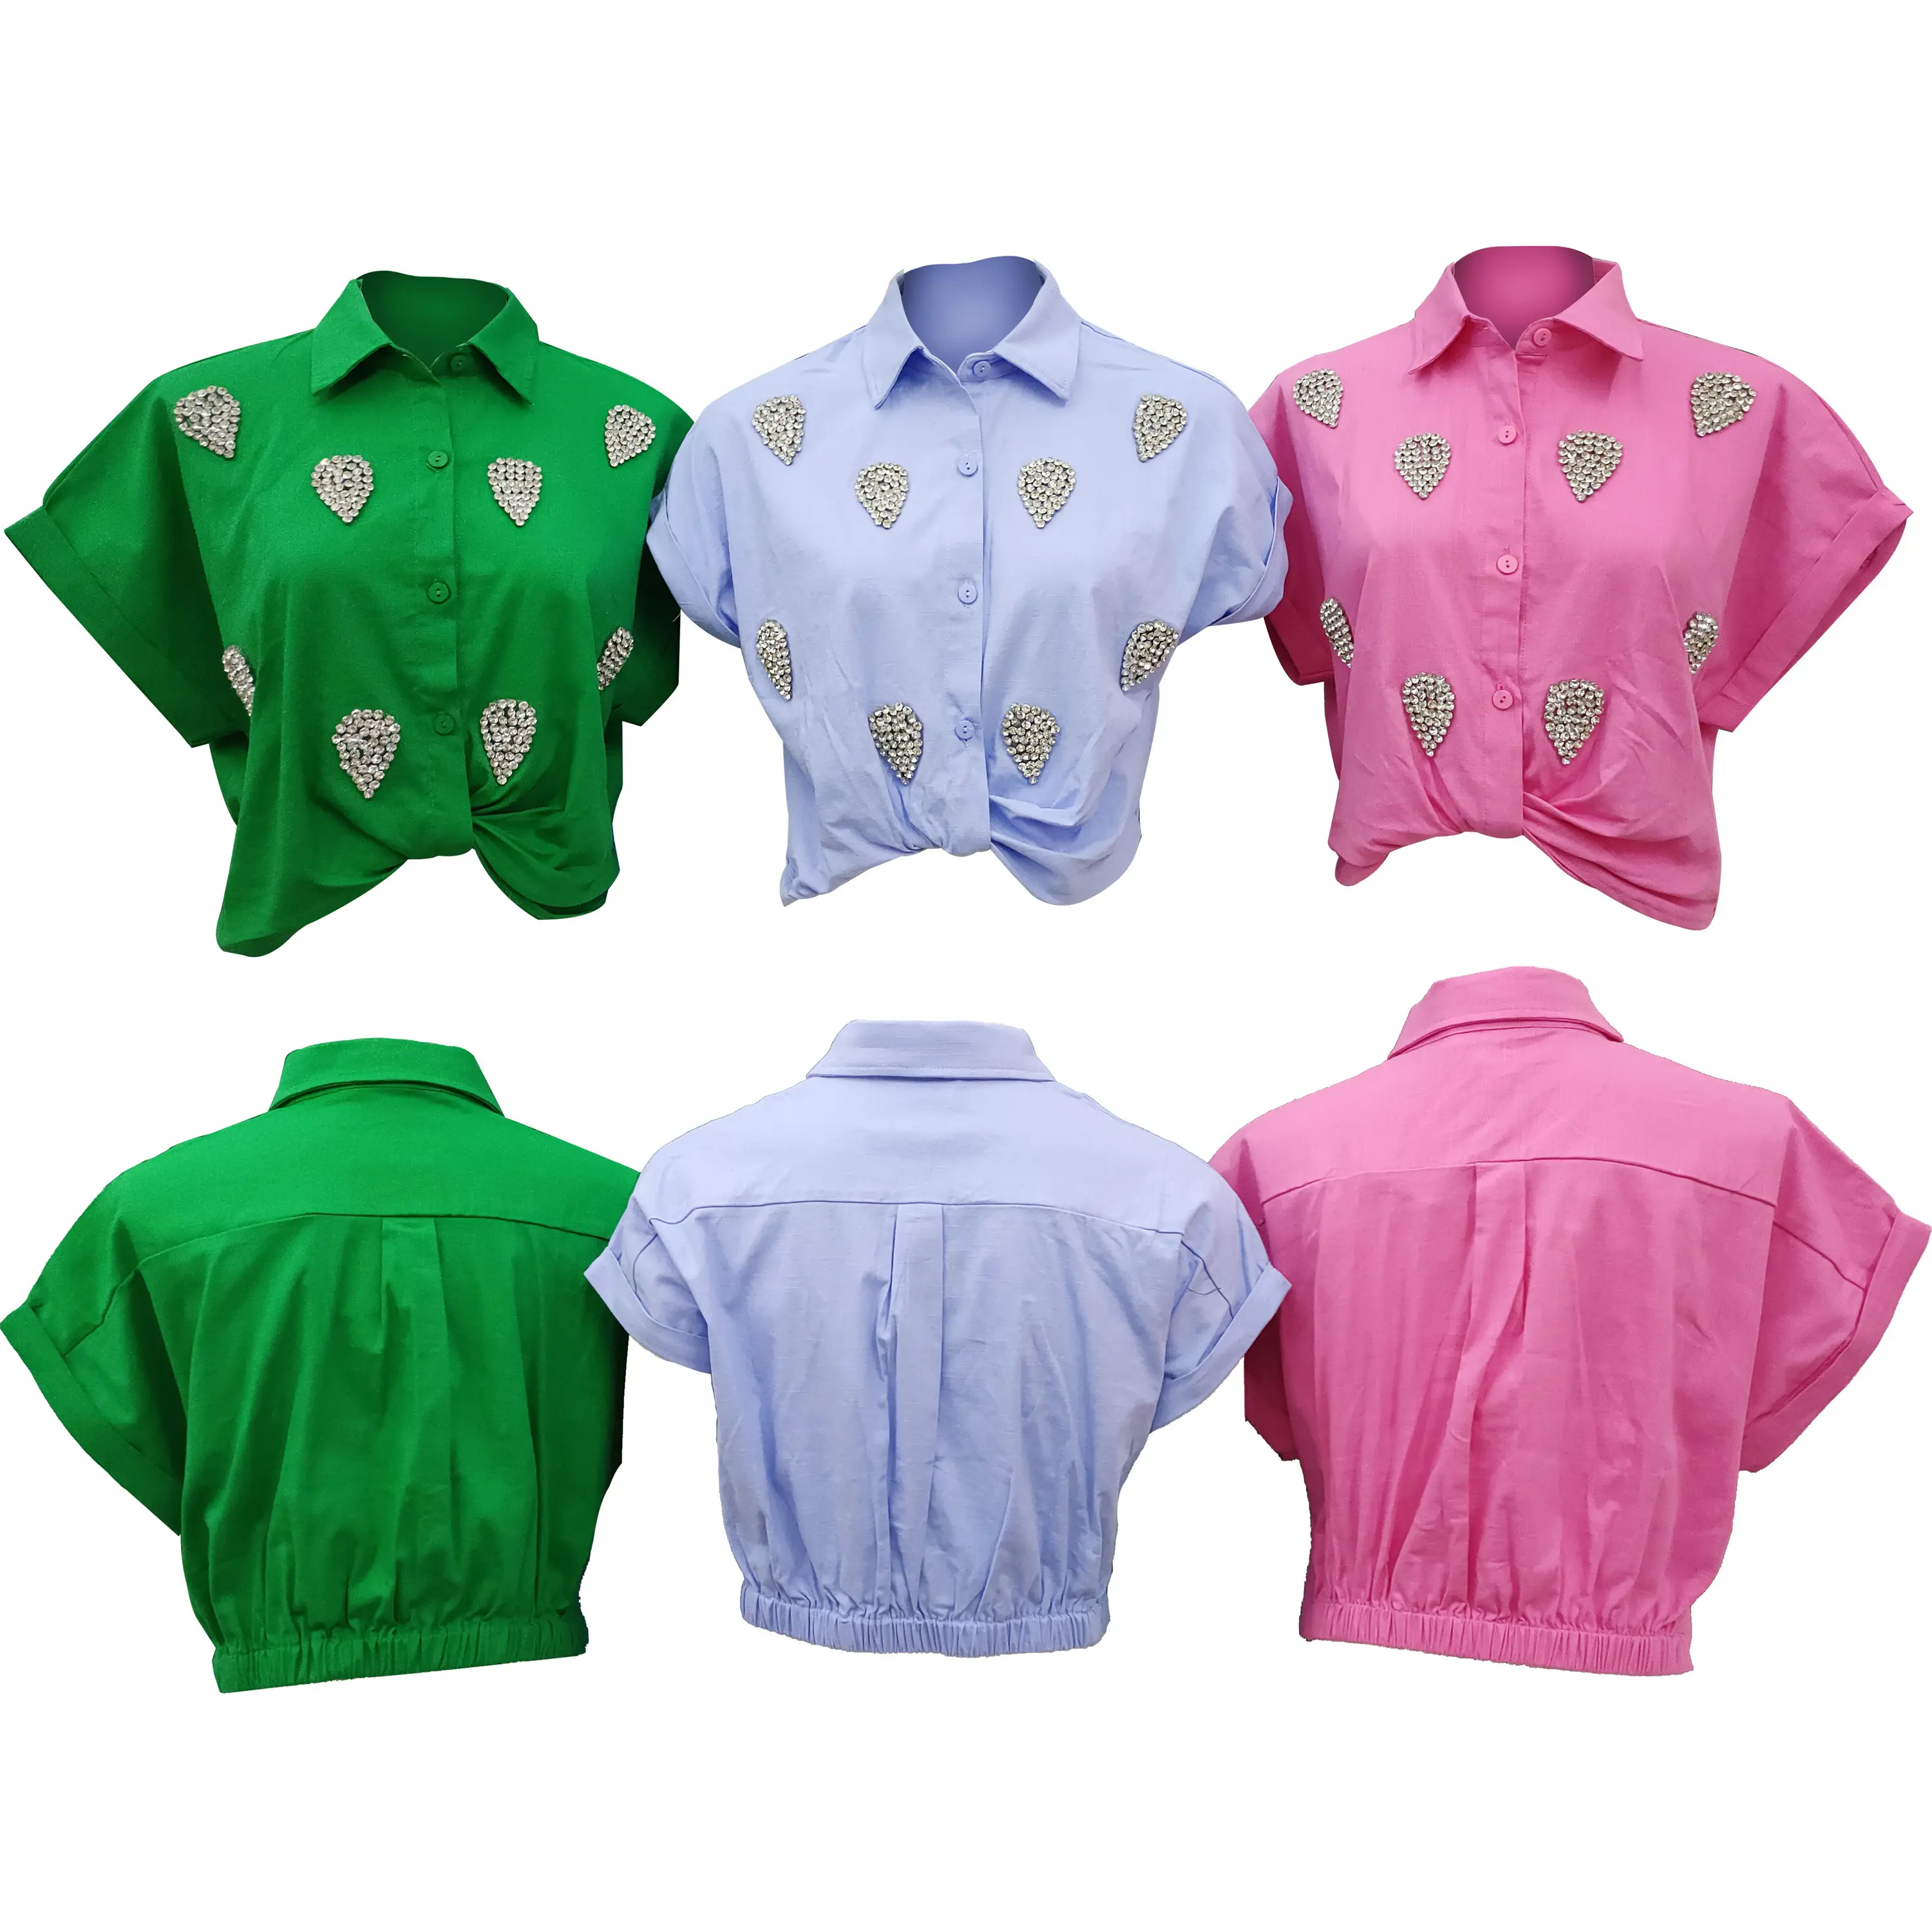 ब्लाउज और शर्ट्स क्विक ड्राई एंटी-रिंकल और एंटी-श्रिंकल ODM पोशाक रोजमर्रा की गर्मियों, वसंत ऋतु में पहनने के लिए स्टाइलिश